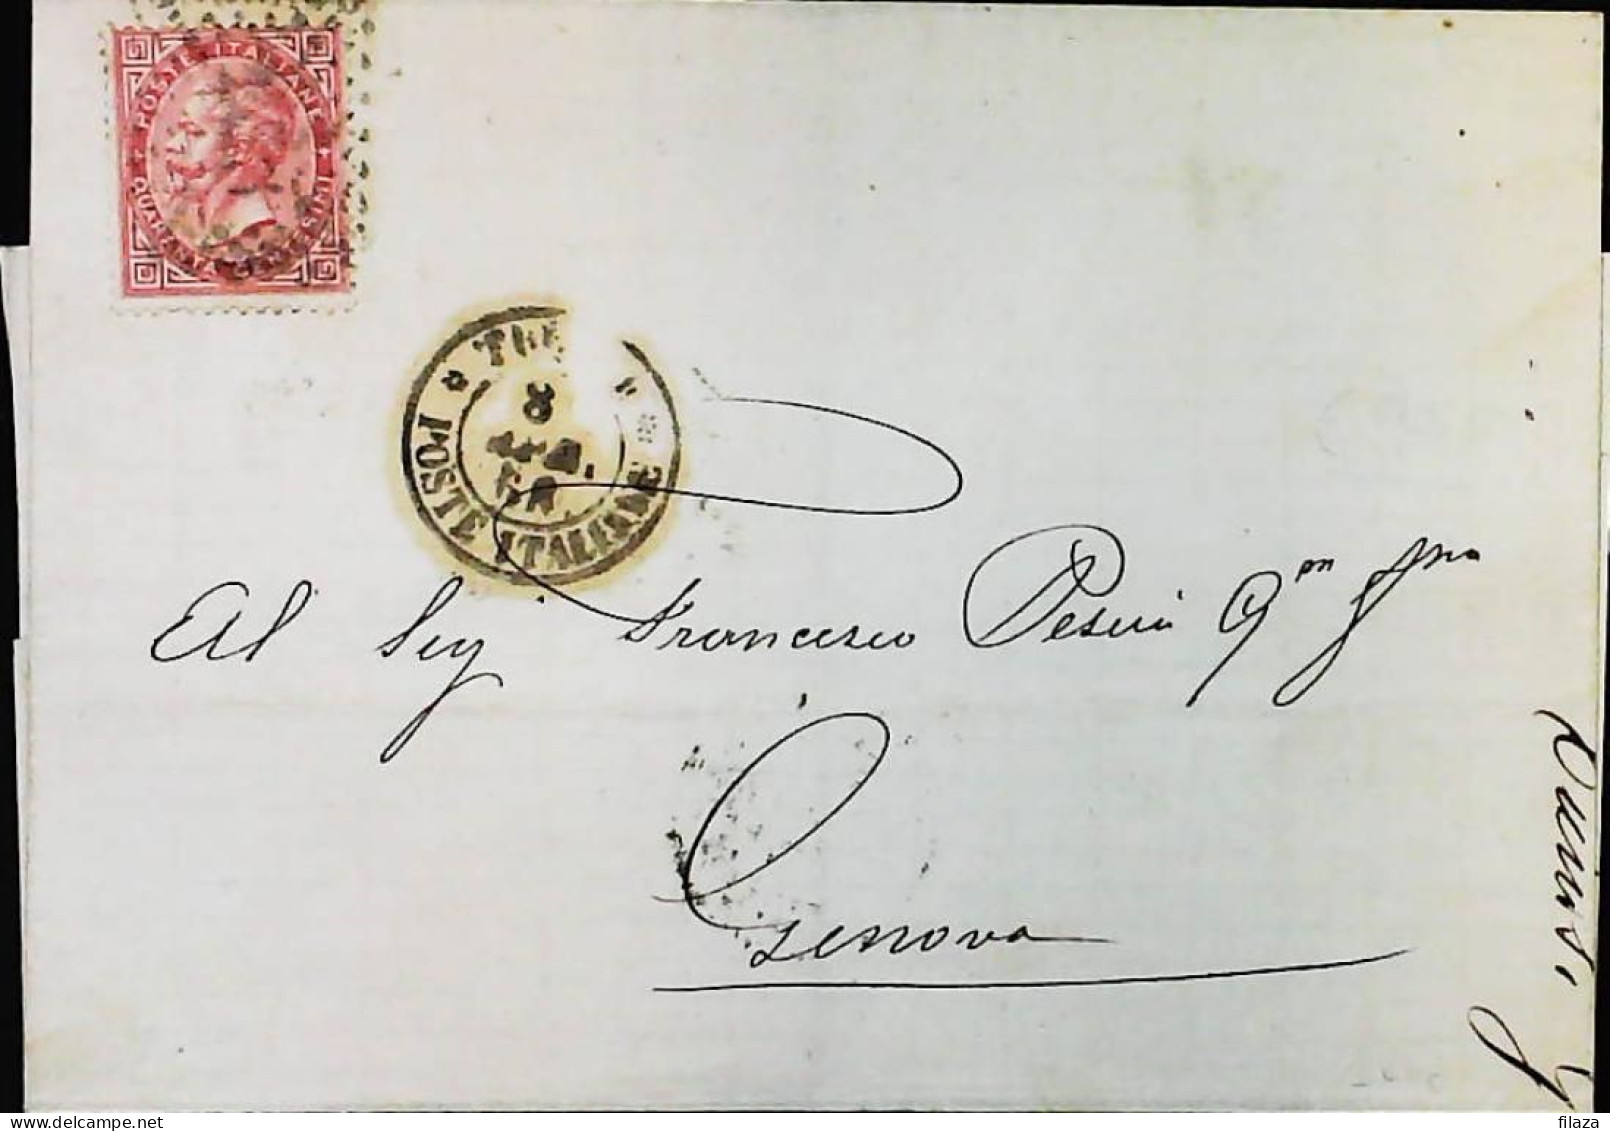 ITALIA / LEVANTE 1868 Lettera Da TUNISI - S6340 - Amtliche Ausgaben